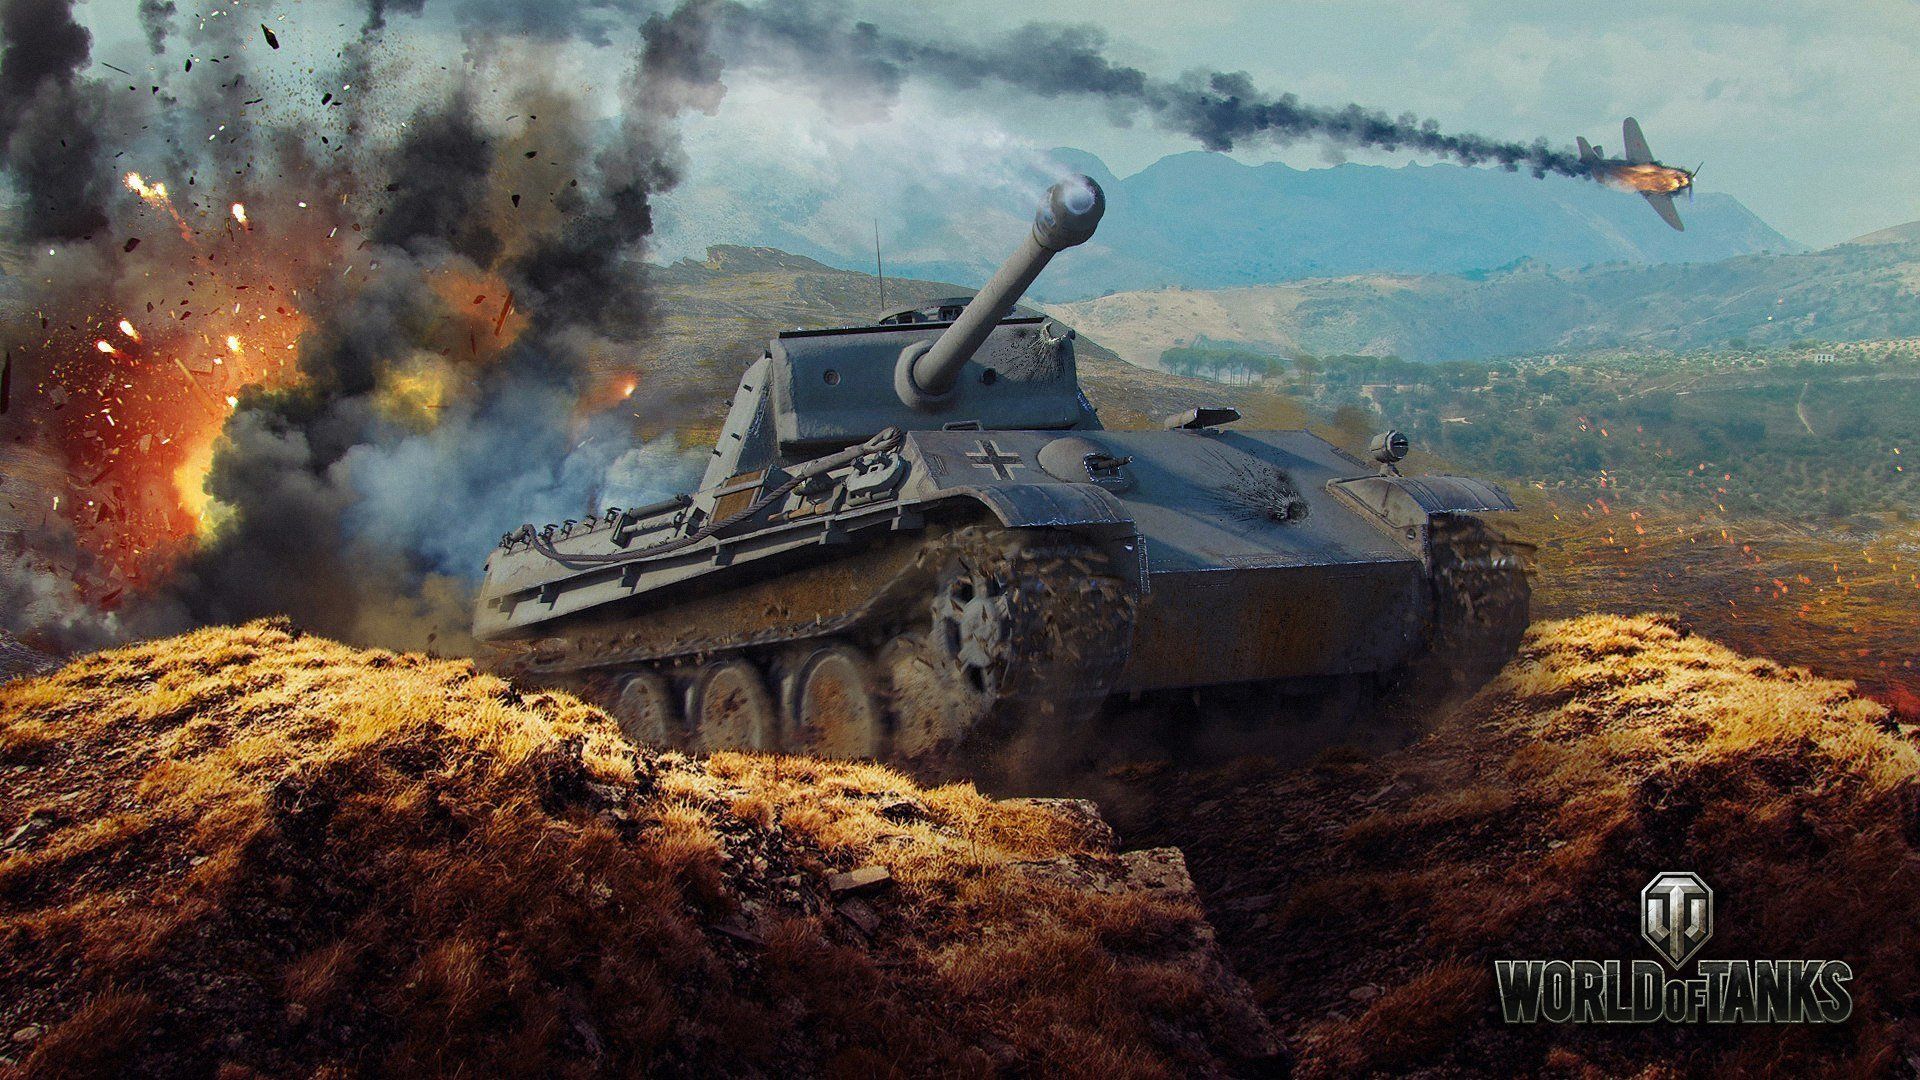 Wot tank war game video wallpaper | 1920x1080 | 512435 | WallpaperUP